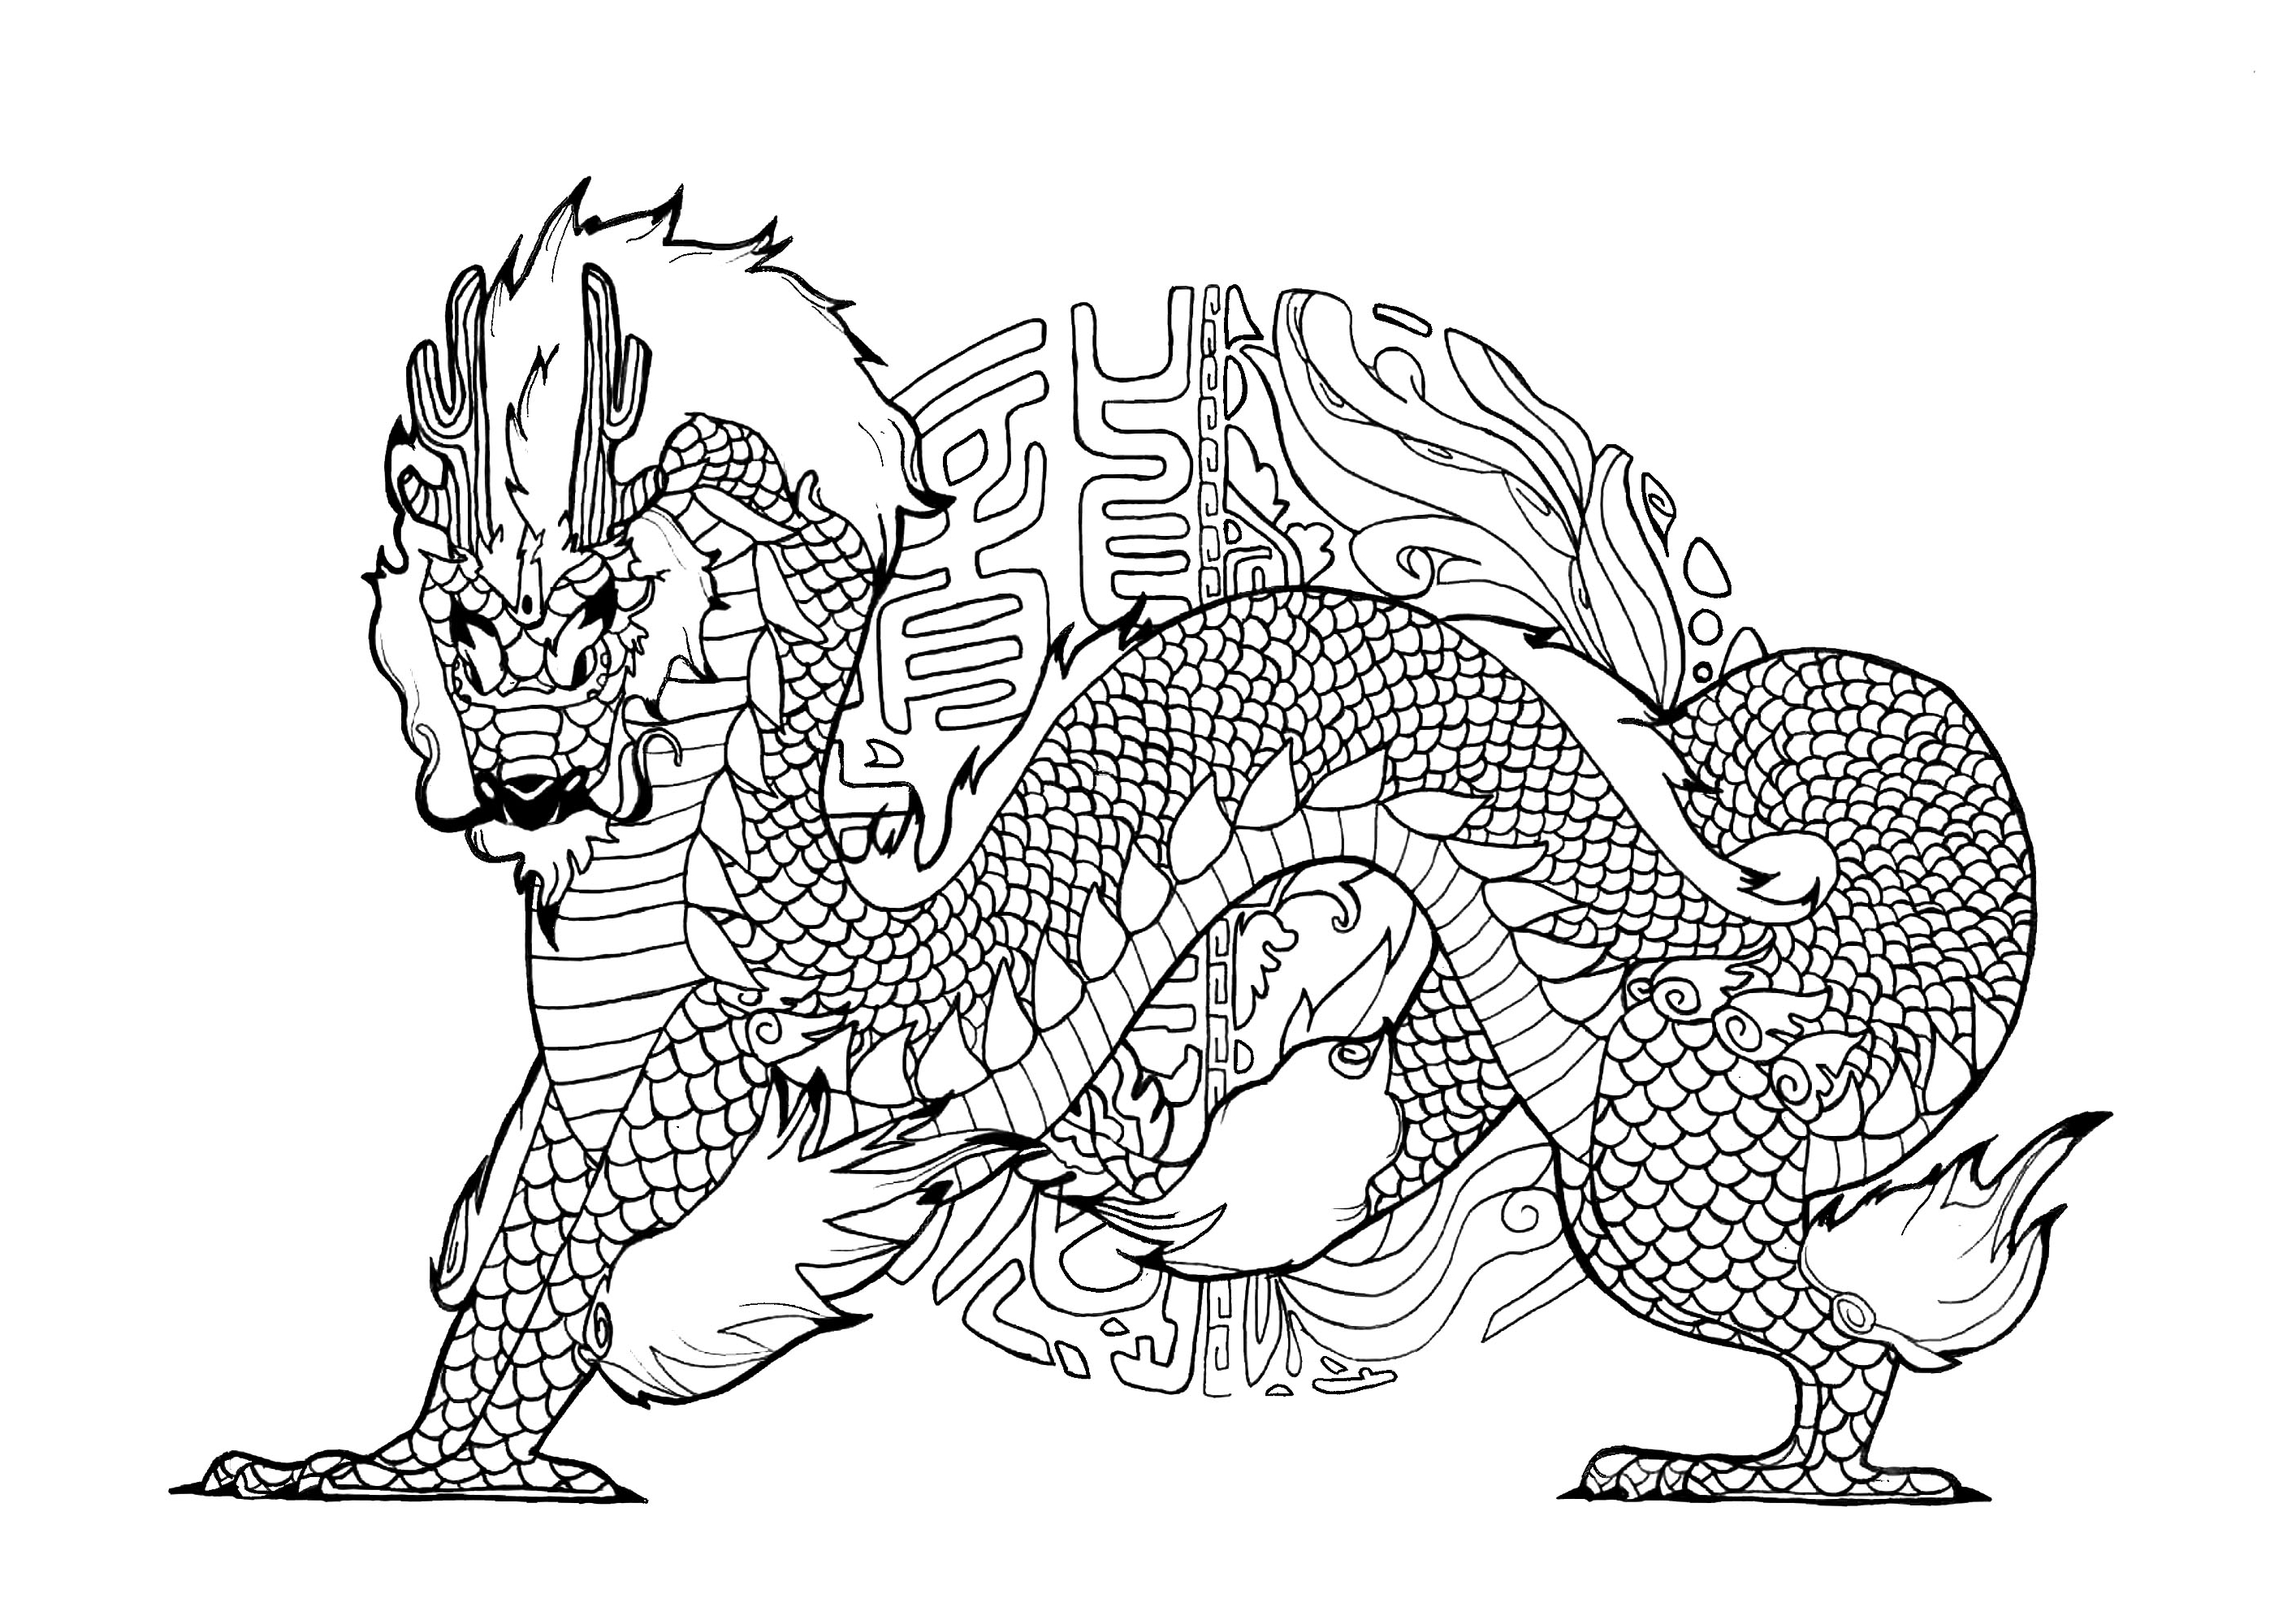 Gran dragón con mandala inspirado en la caligrafía china de fondo. Los dragones son criaturas míticas representadas como grandes reptiles alados con afilados dientes y garras, a menudo capaces de exhalar fuego o veneno.